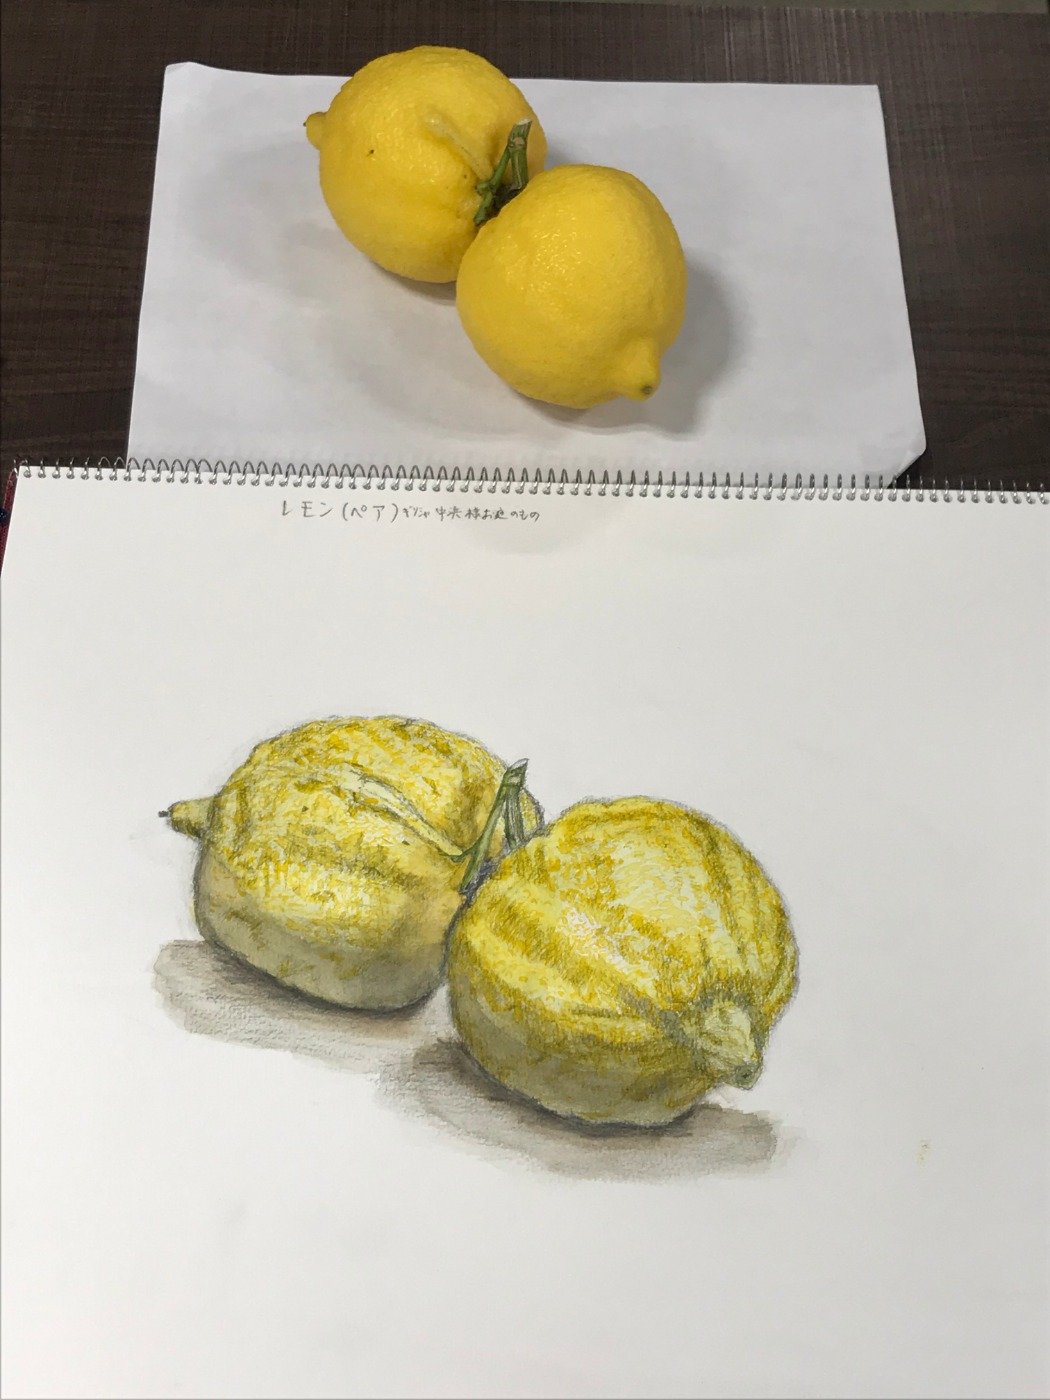 木曜日 日本画クラス 変わったレモンの水彩画 絵画教室ブログ ブログ 名古屋市千種区 基礎のデッサン 水彩画から洋画 油彩画 日本画まで